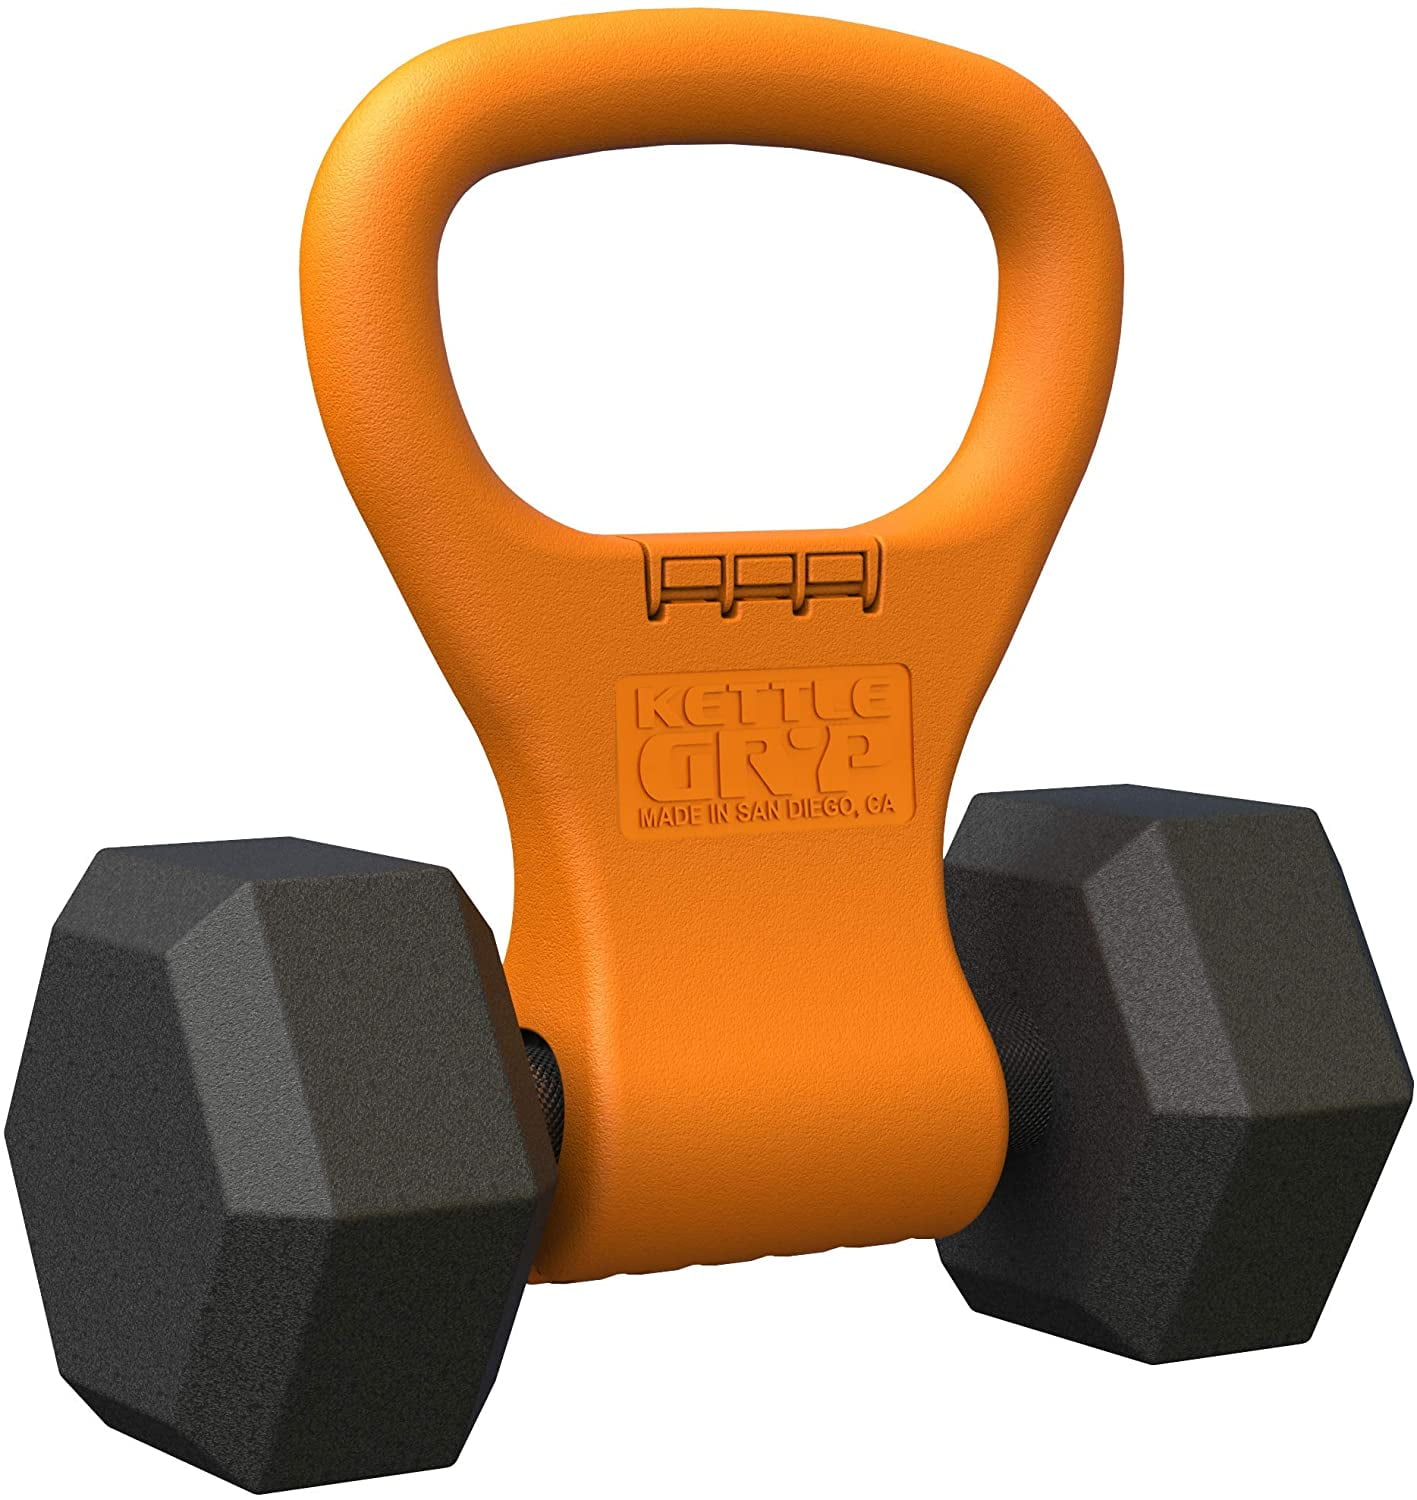 Portable Kettlebell Grip Adjustable Weight Travel Workout Equipment Gear